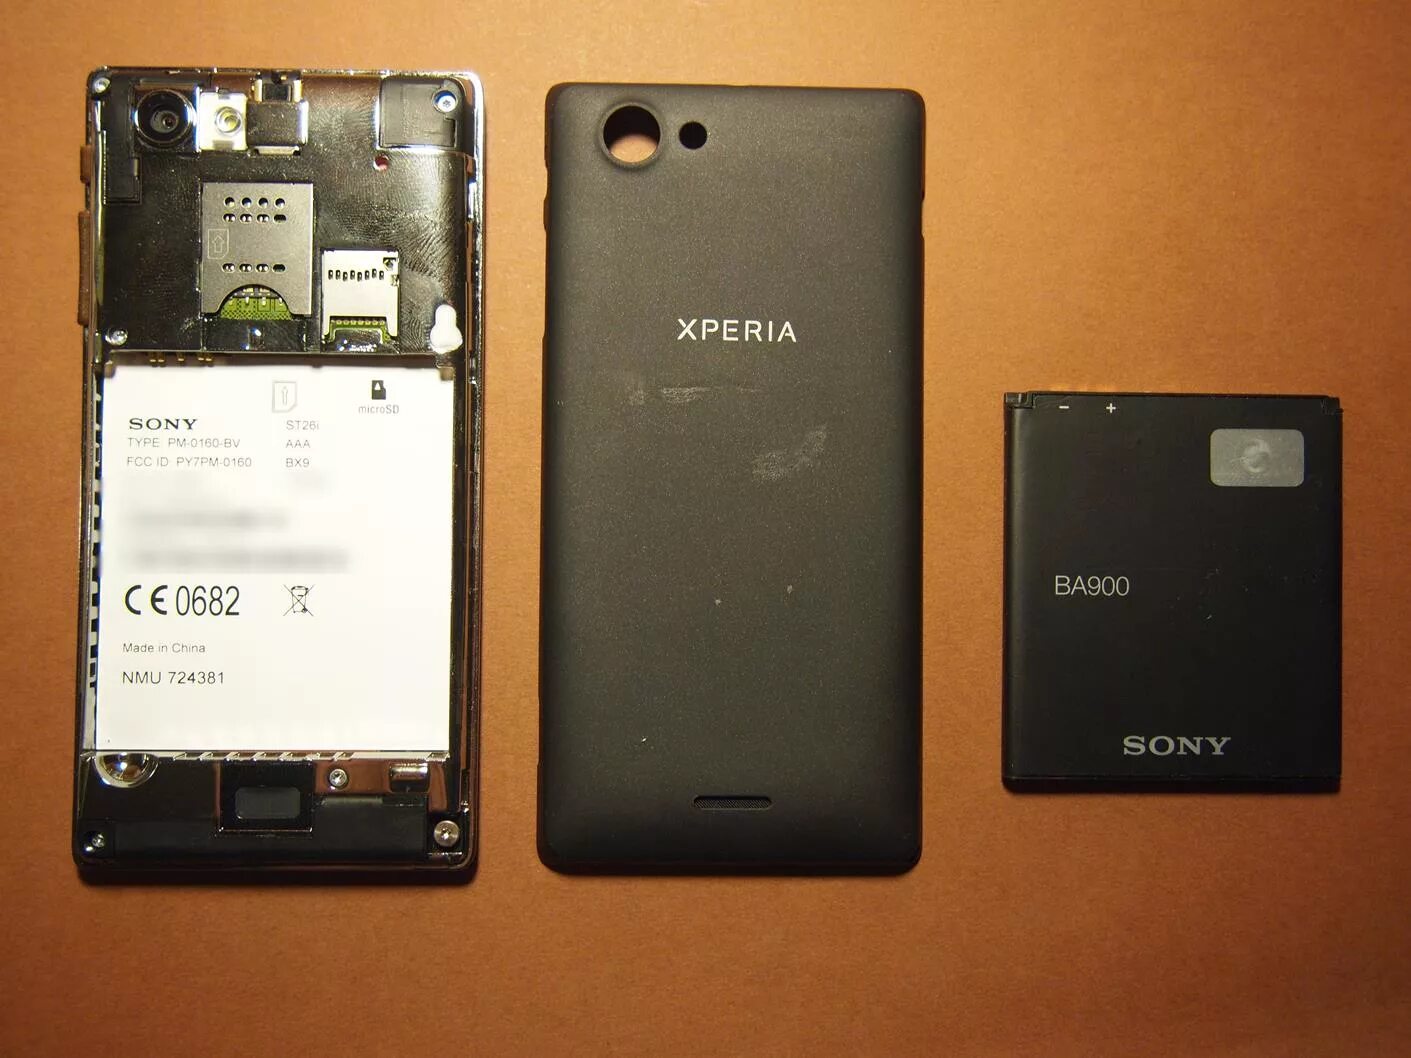 Sony xperia батарея. Sony Xperia ba900. Sony Xperia PM-0160-BV. Sony Xperia ba900 телефон. Sony pm0270.